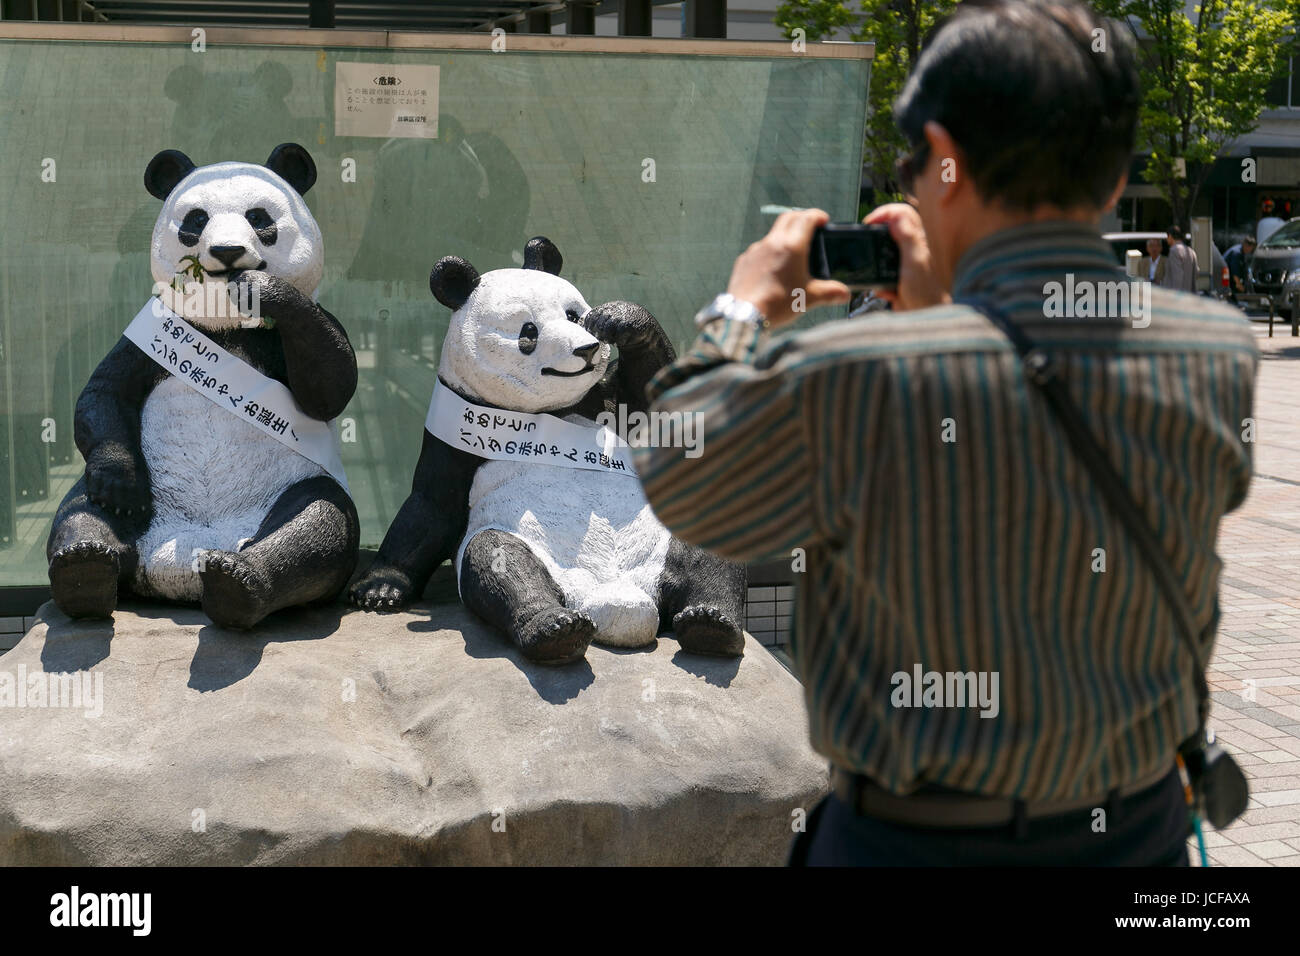 Un Homme Prend Une Photo Des Statues De Pandas Geants Du Zoo De Ueno Avec Un Message Ecrit En Japonais Bebe Panda Joyeux Anniversaire A L Exterieur De La Gare Okachimachi Le